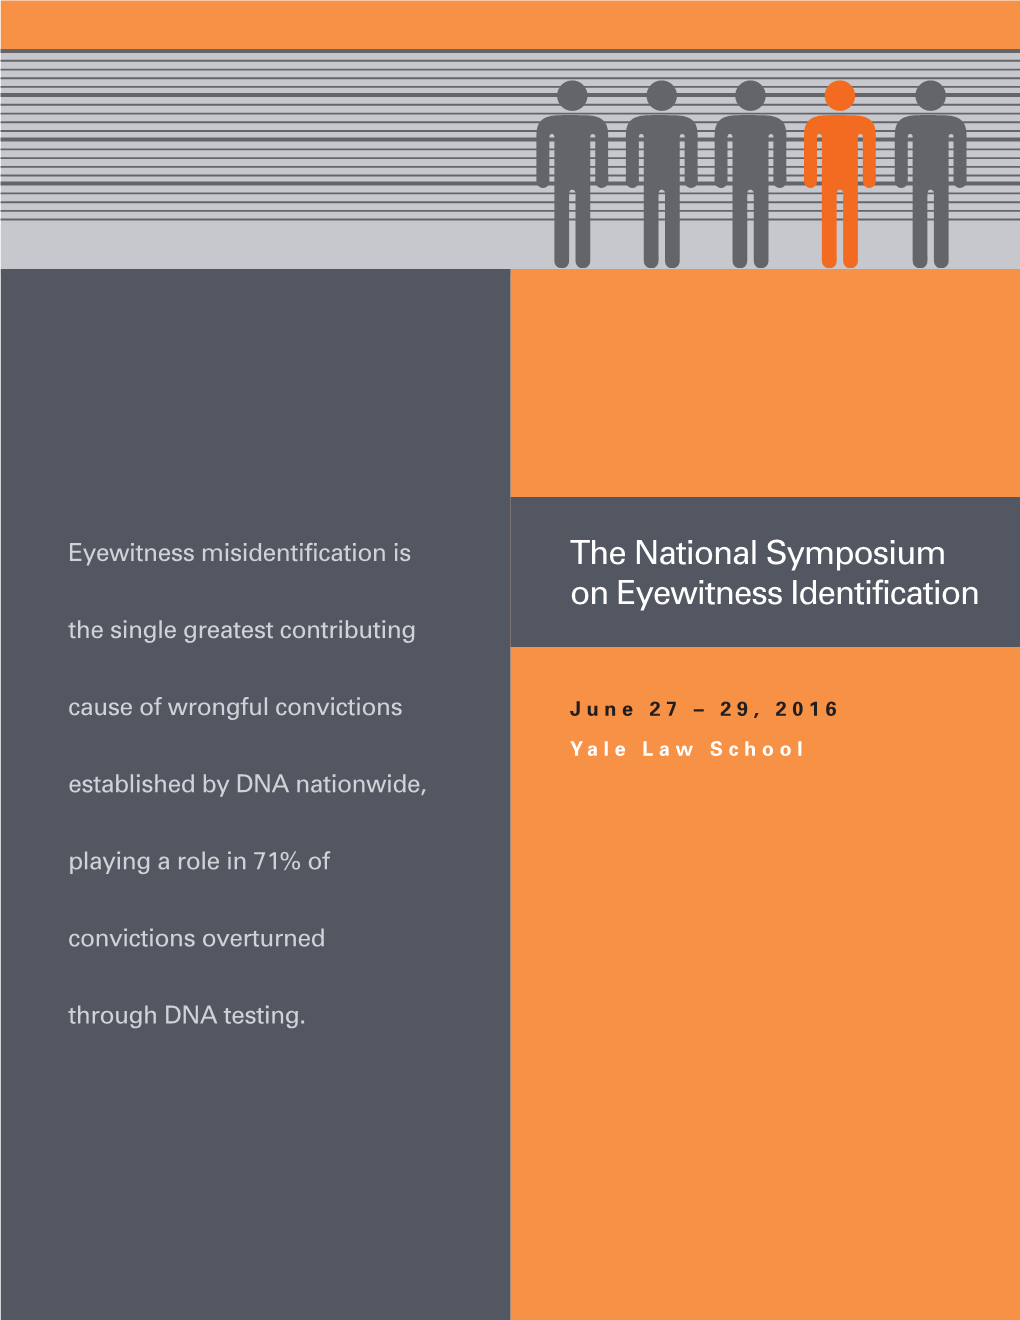 The National Symposium on Eyewitness Identification